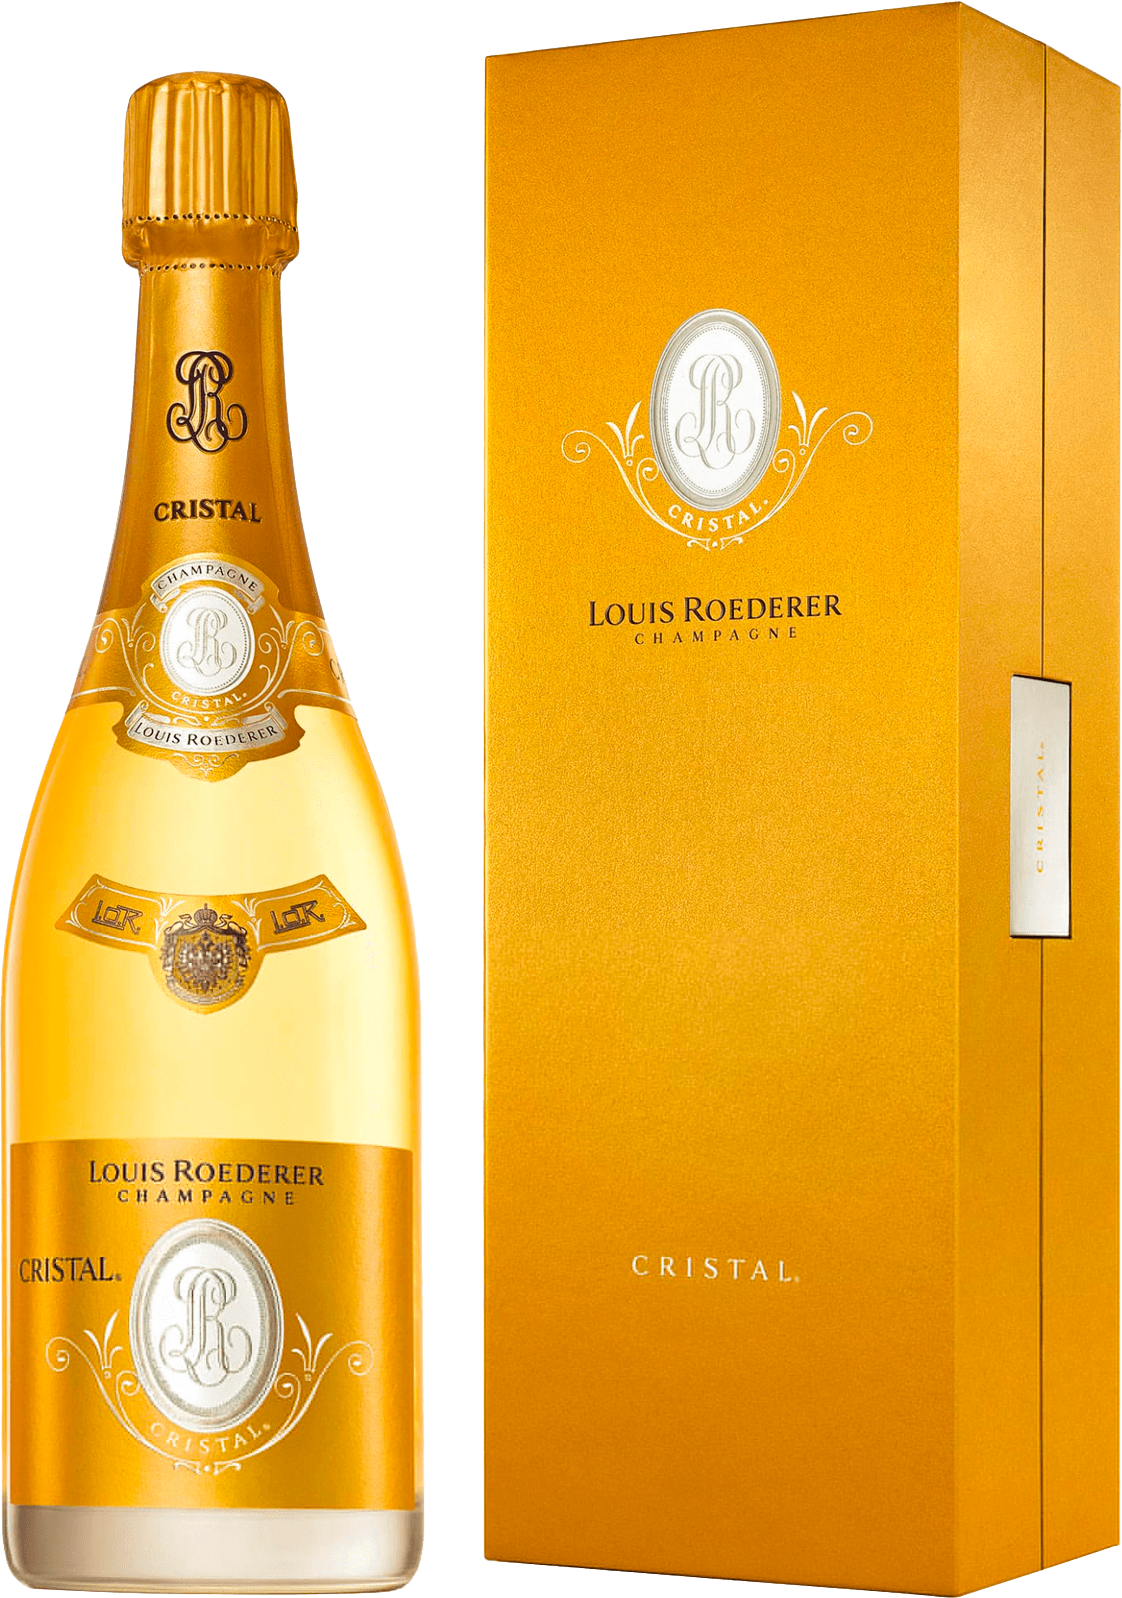 Cristal roederer en coffret bois 1999  Roederer, Champagne